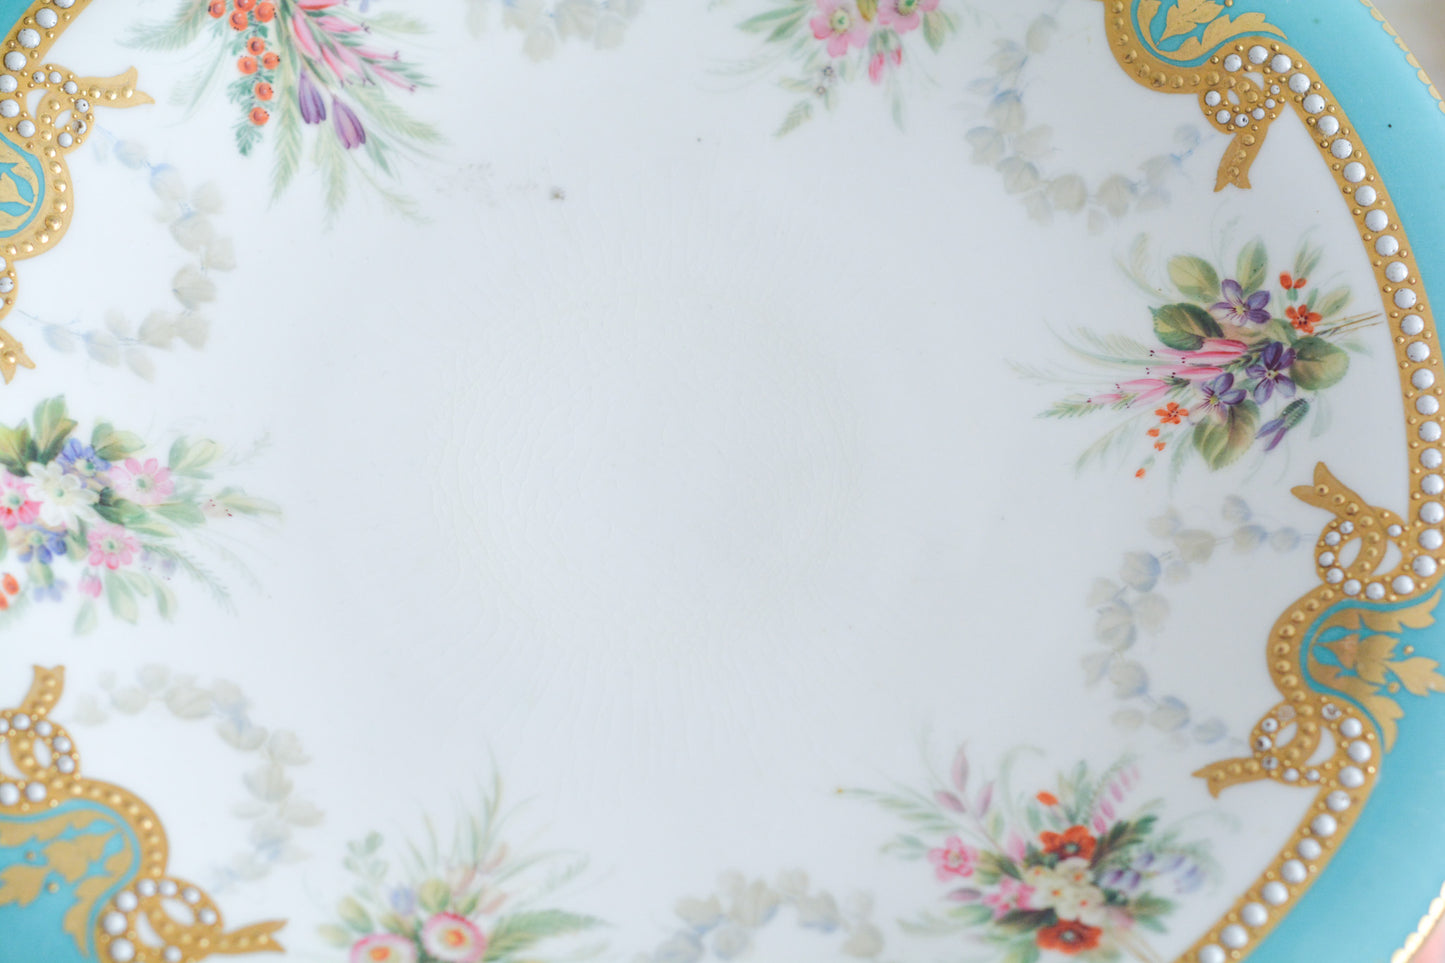 英国アンティーク、ミントンのターコイズブルーにエナメルのジュールが美しいコンポート。脚の部分の作りがミントンらしい繊細で優美な作品です。ハンドペイントで描かれた花々も生き生きとして特別なコンポートです。